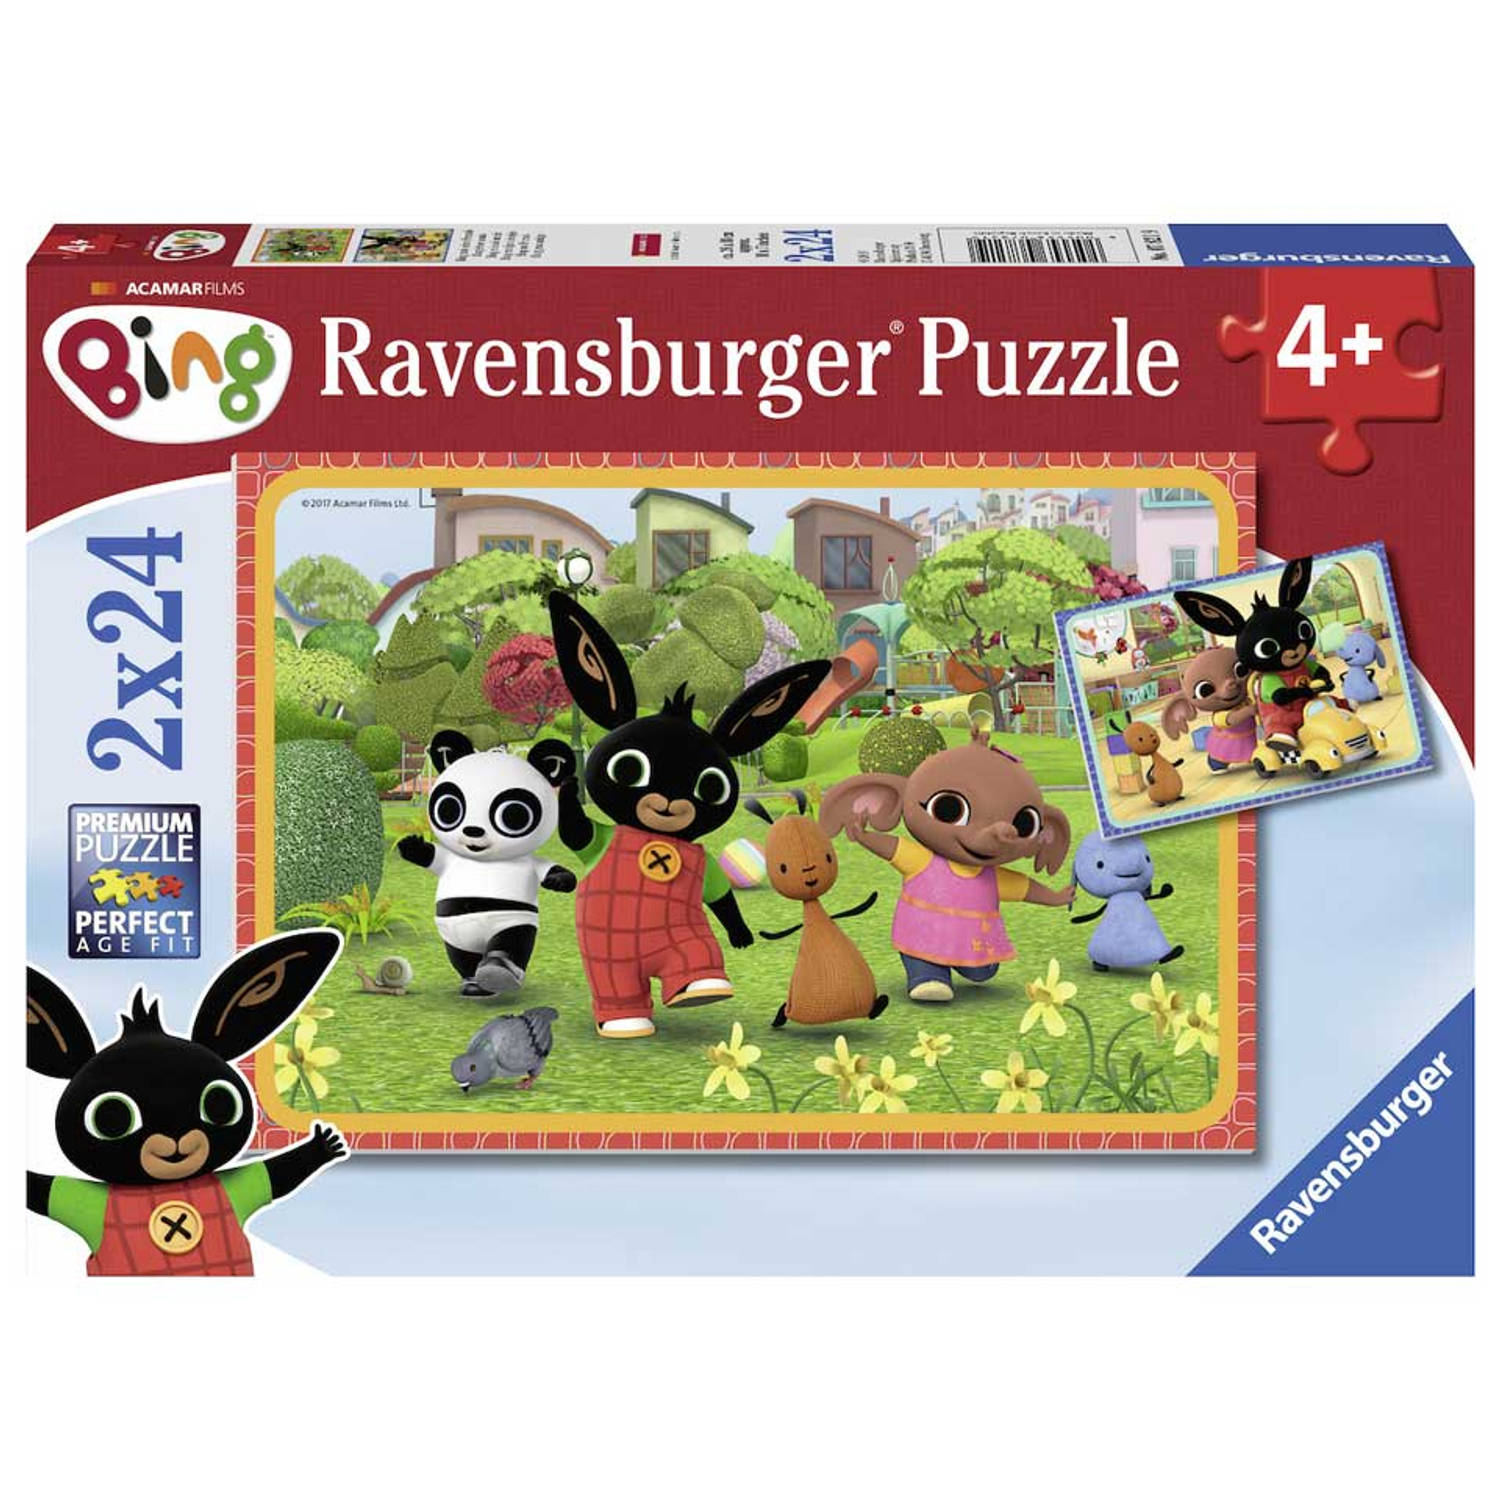 Ravensburger Puzzle Bing und seine Freunde 07821